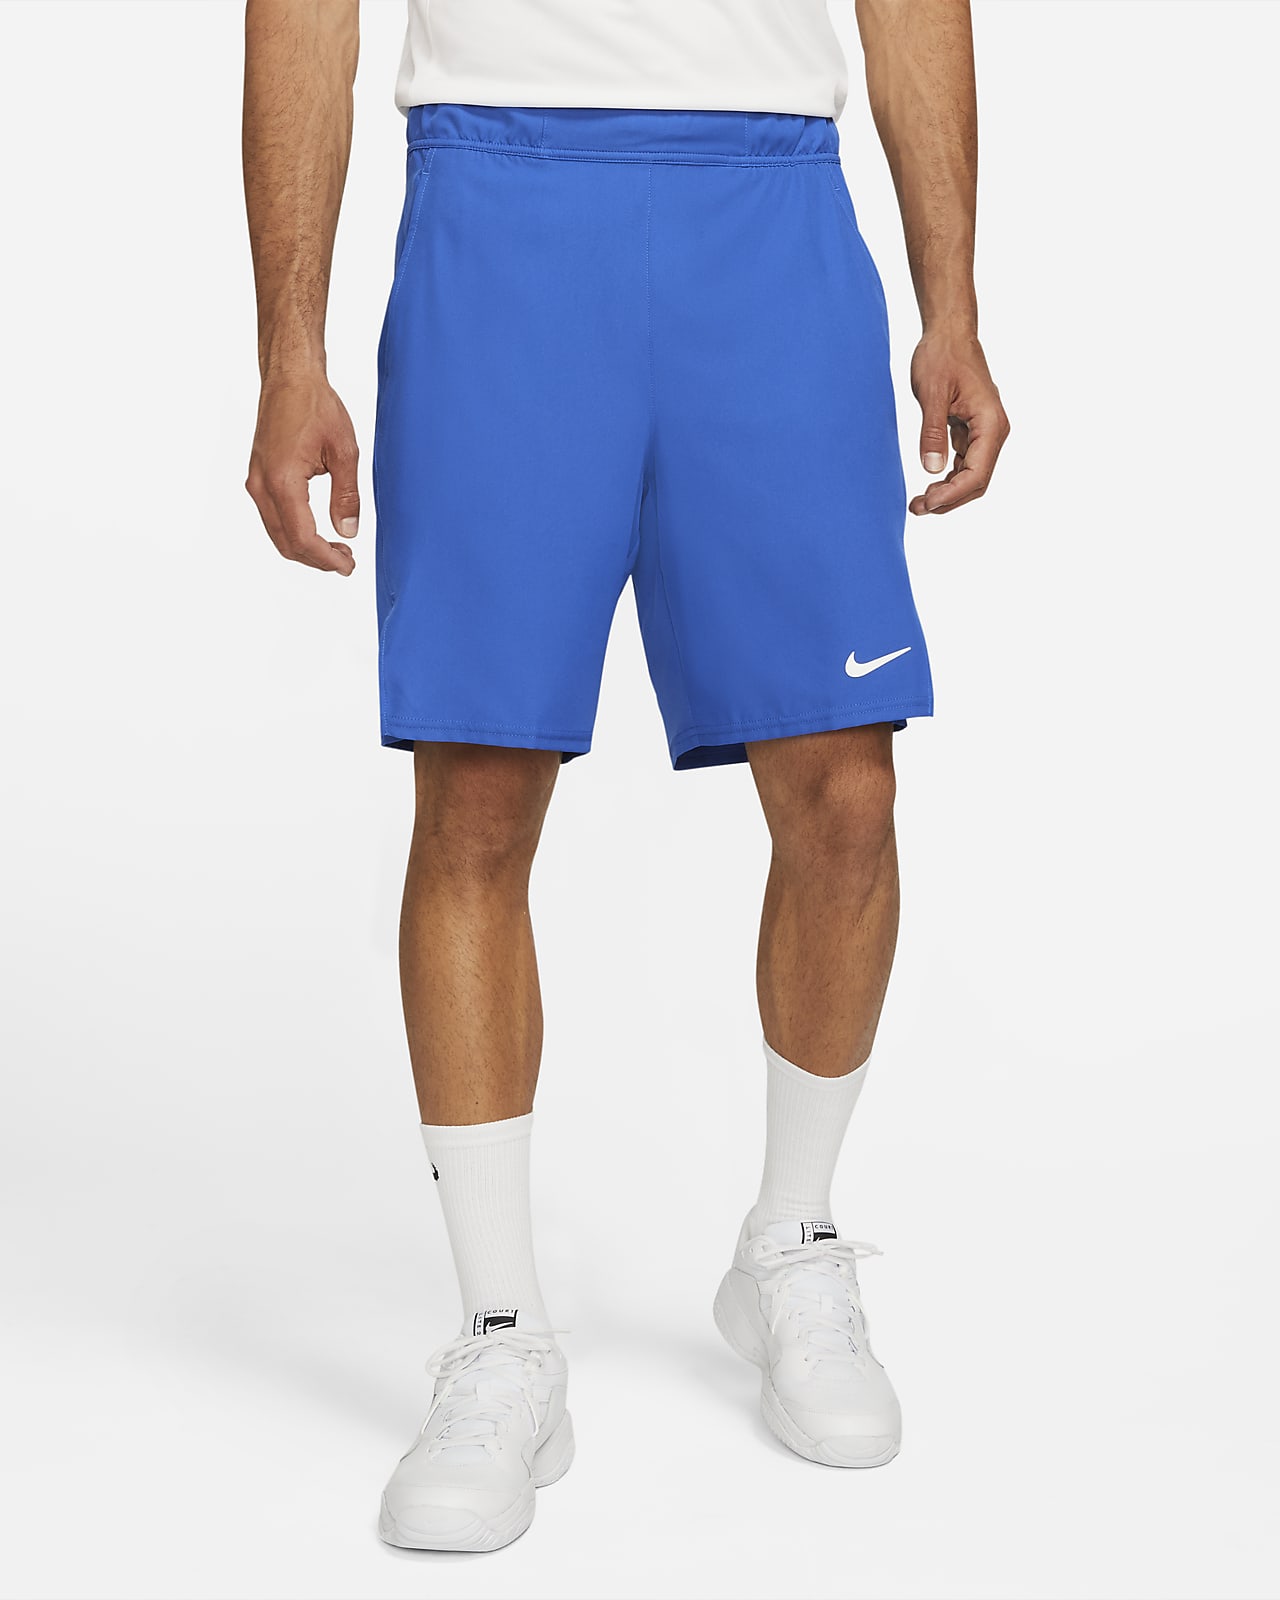 Entretenimiento Paine Gillic Reparación posible NikeCourt Dri-FIT Victory Pantalón corto de tenis de 23 cm - Hombre. Nike ES